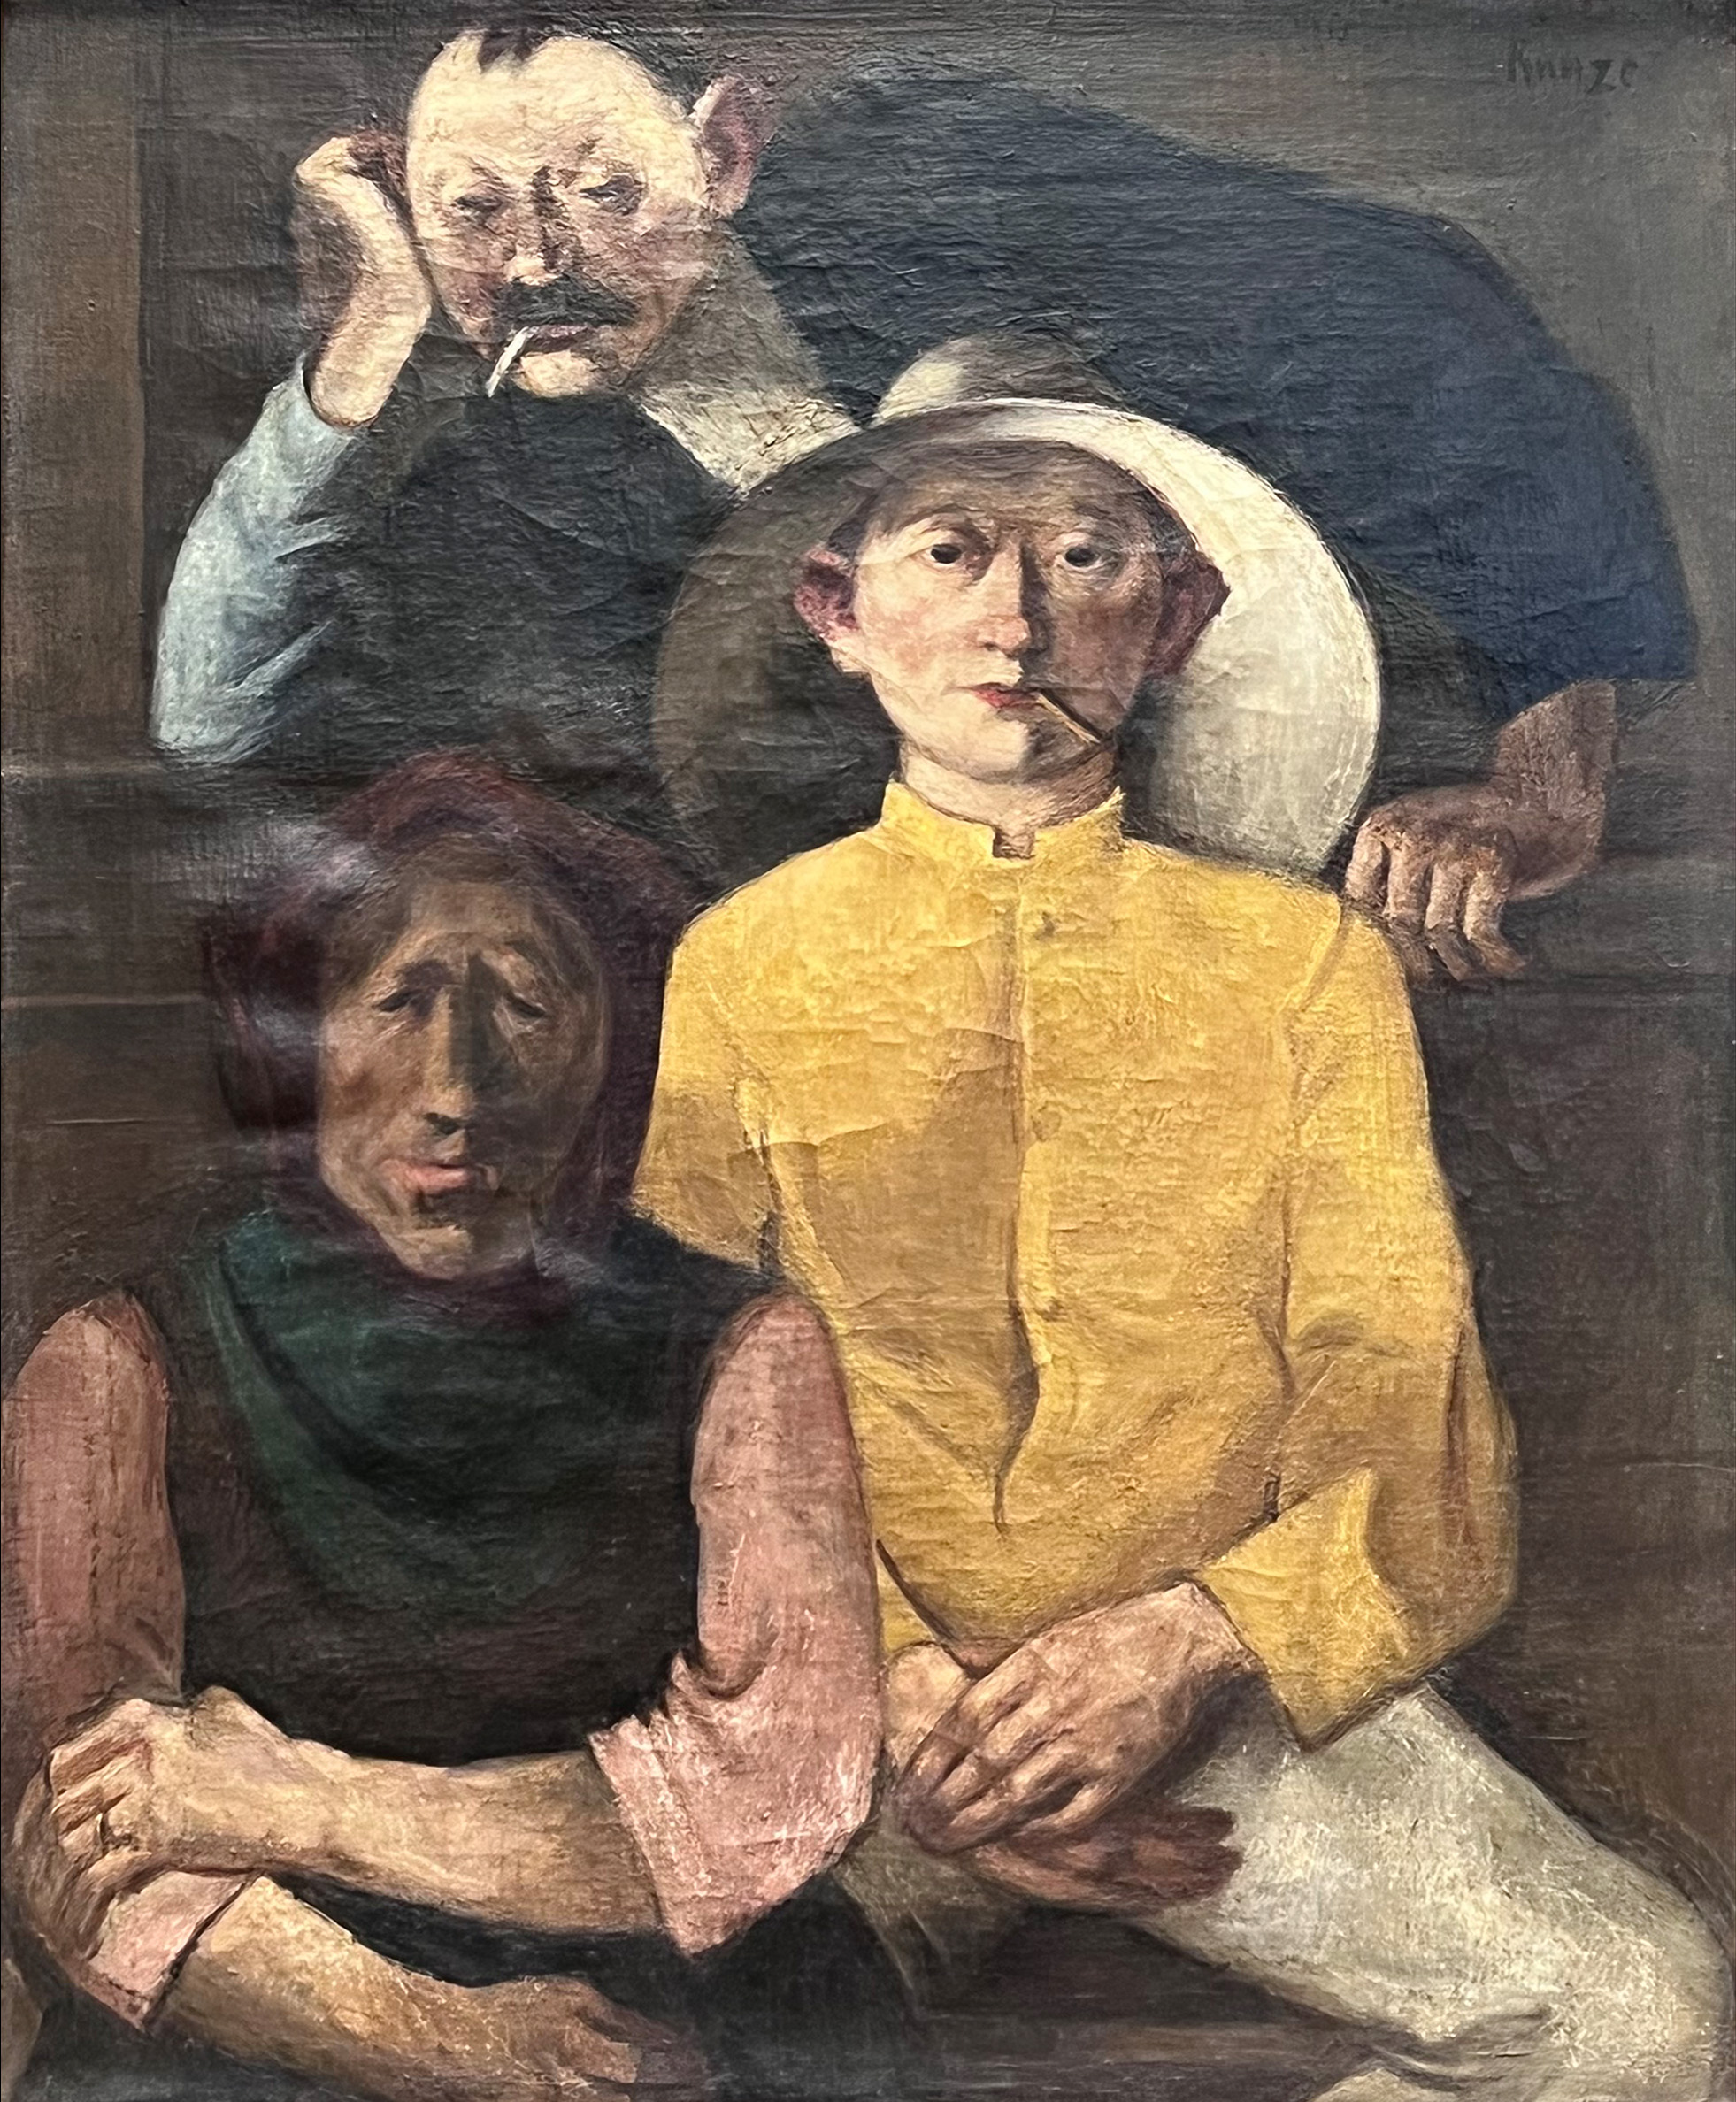 Wilhelm RUNZE (1887 - 1973). "Three labourers".